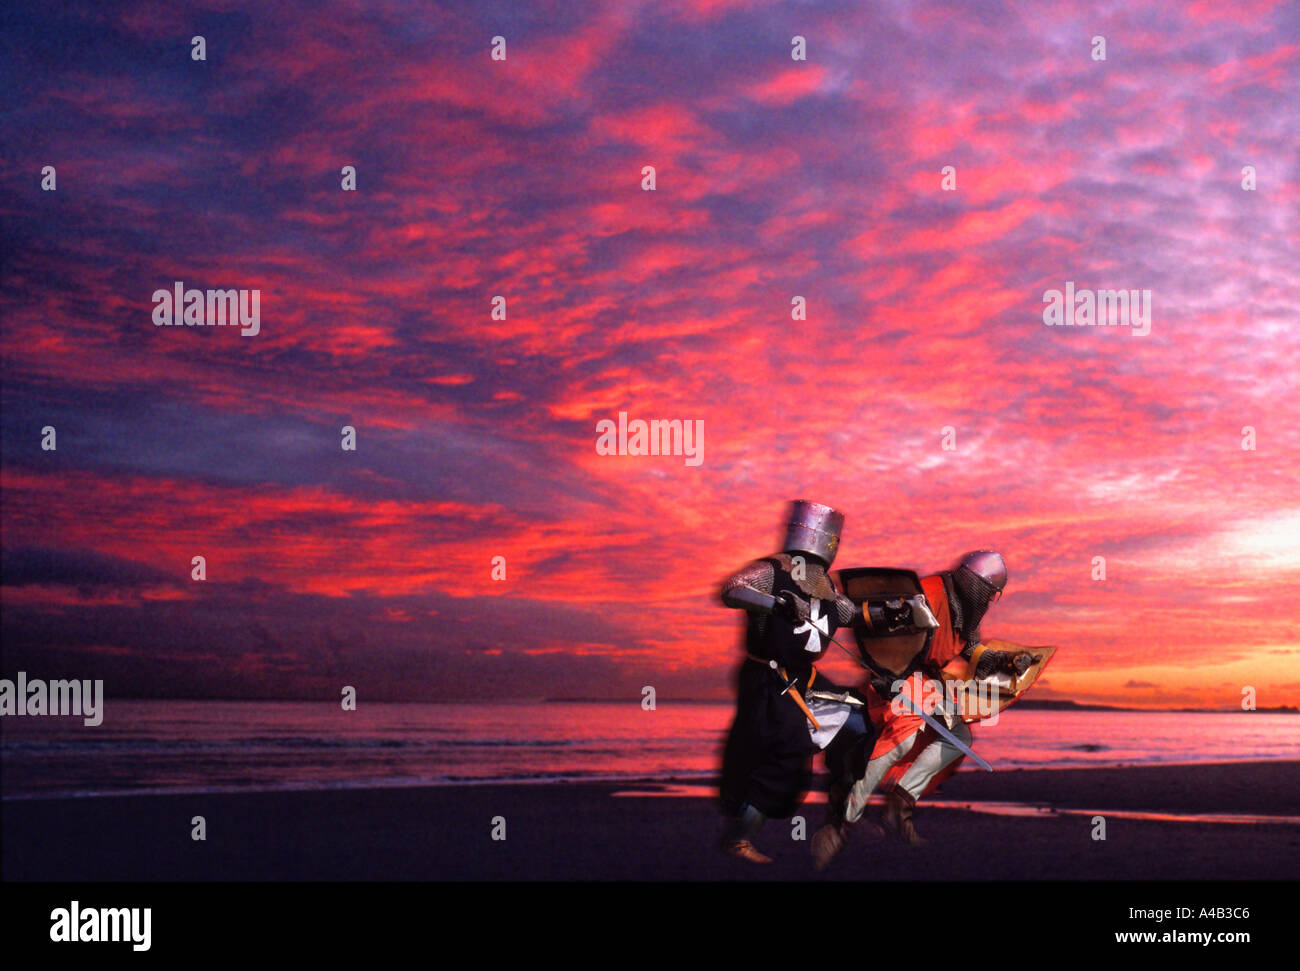 Deux chevaliers. Célèbre bataille lutte sur plage avec coucher de soleil rouge sang. Pour un usage éditorial uniquement. Banque D'Images